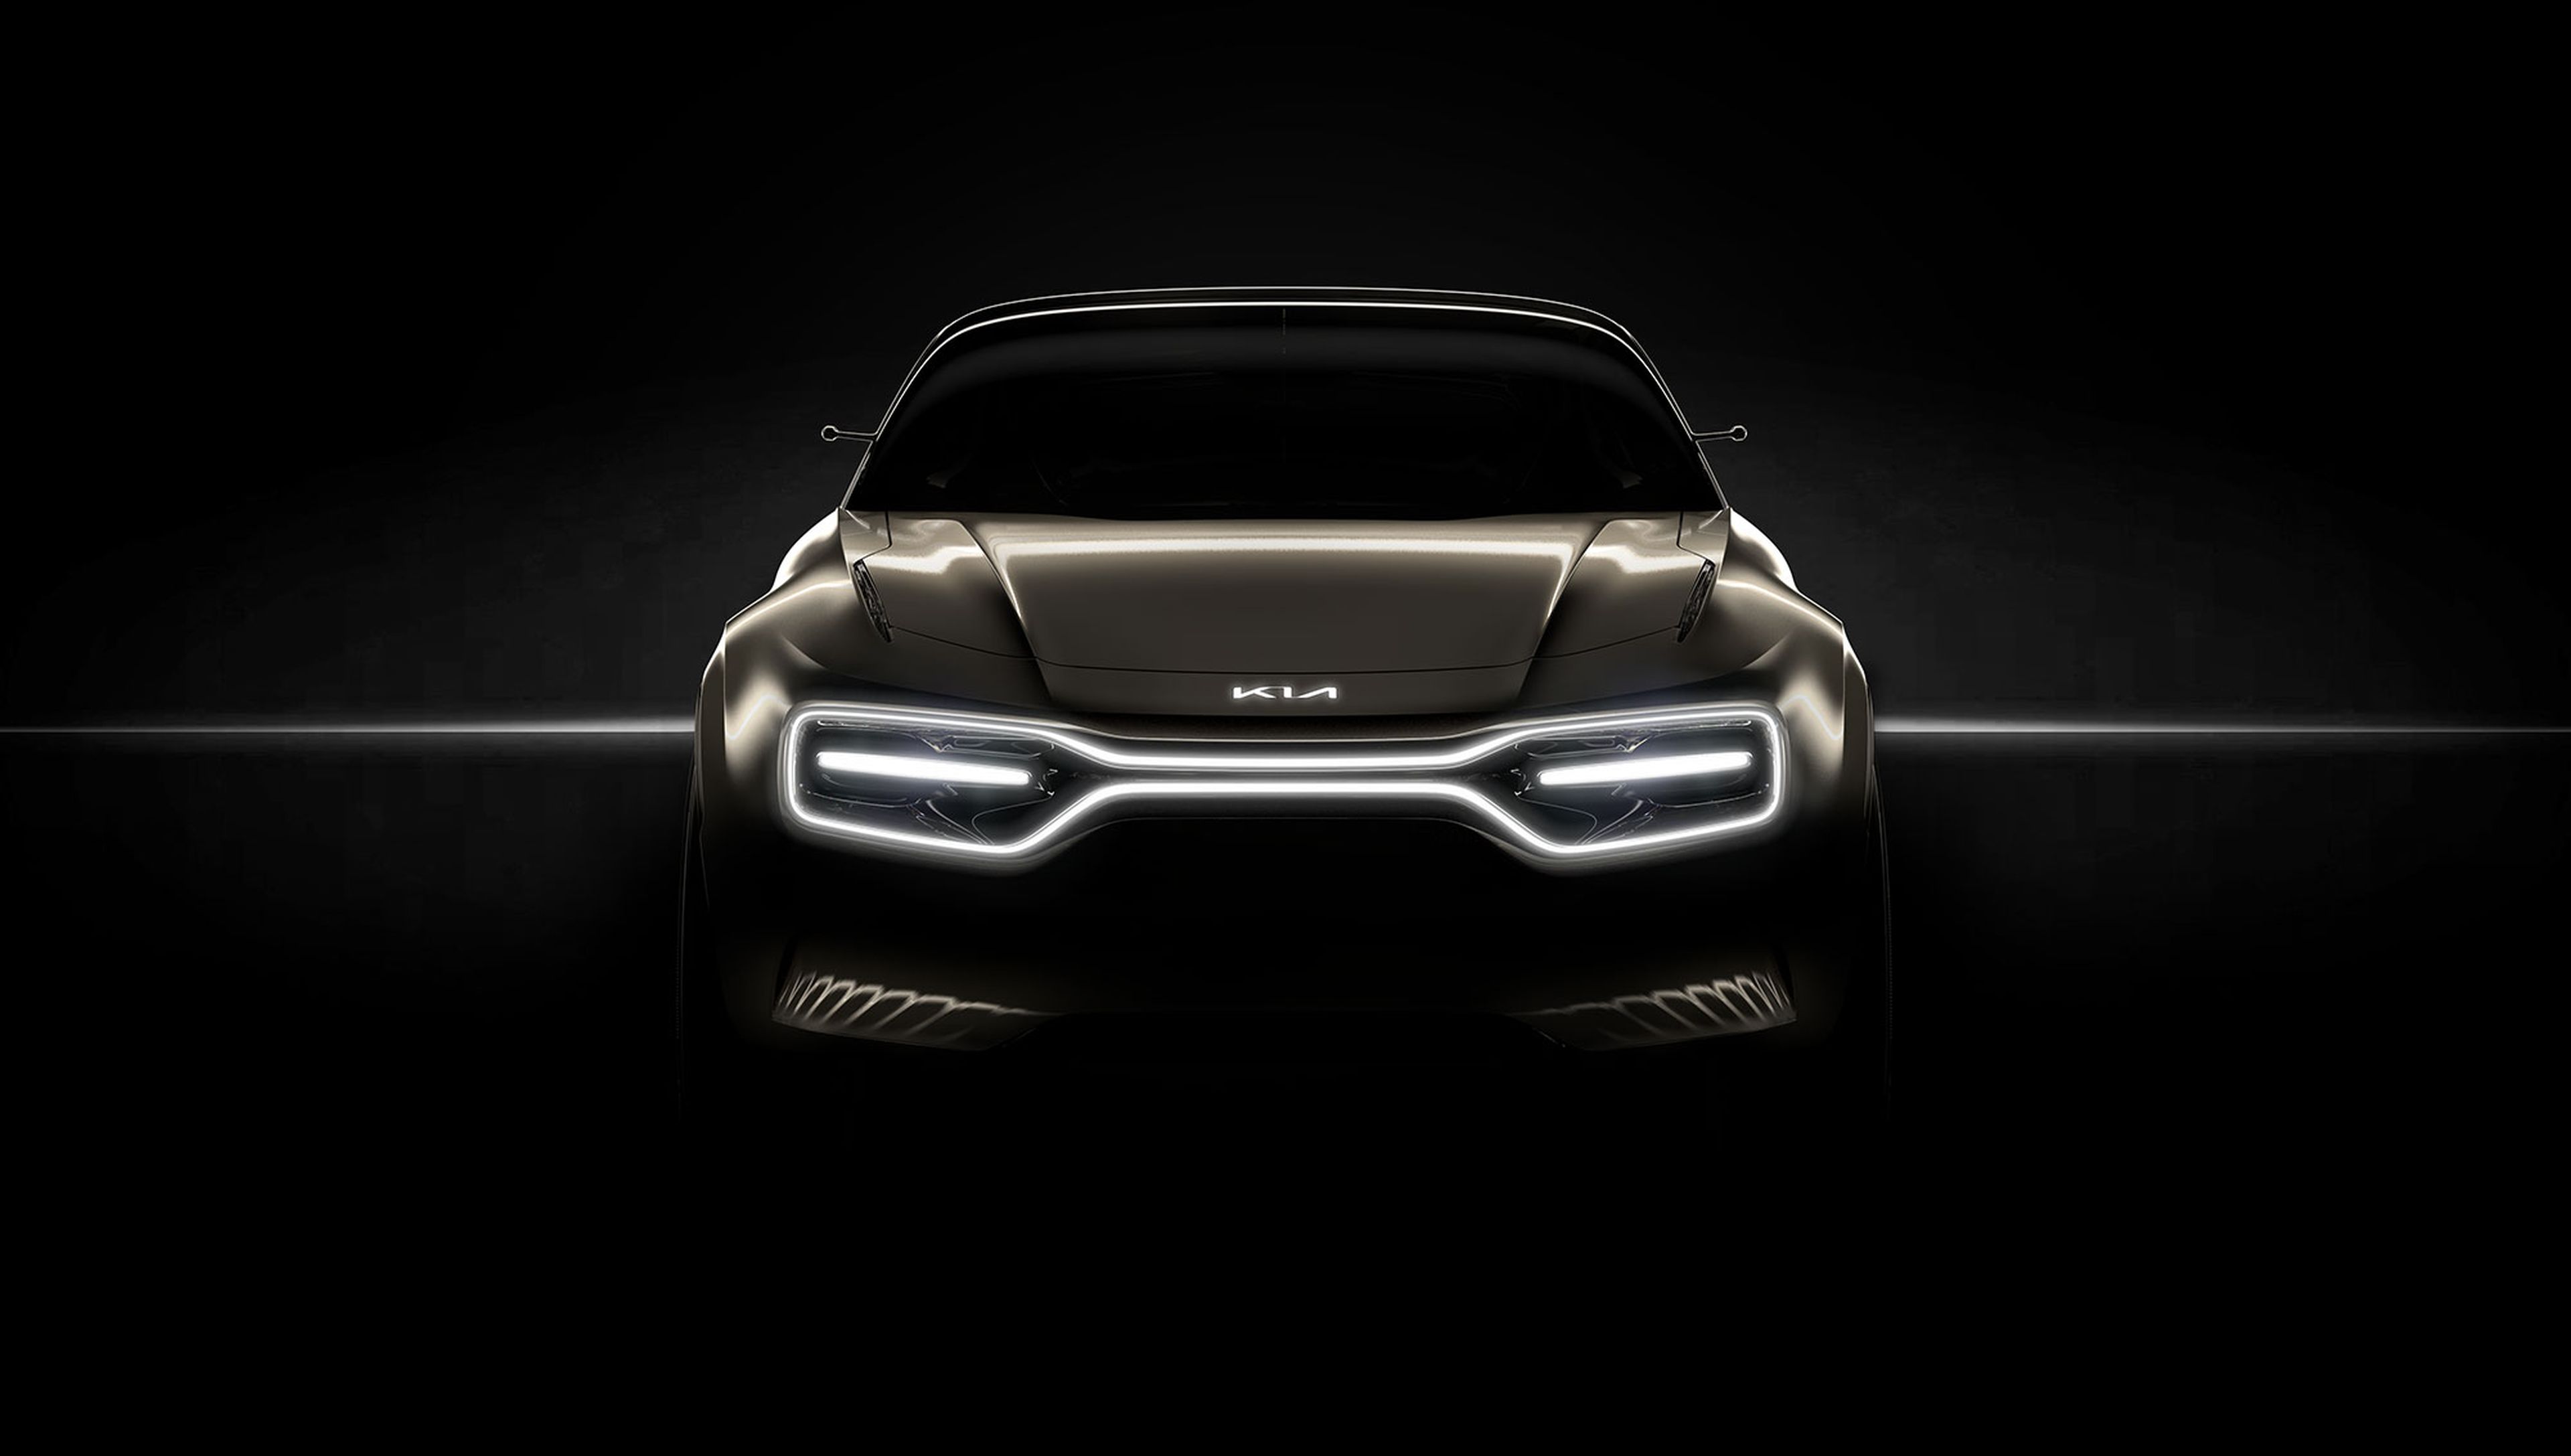 Kia presentará un prototipo eléctrico en el Salón de Ginebra 2019